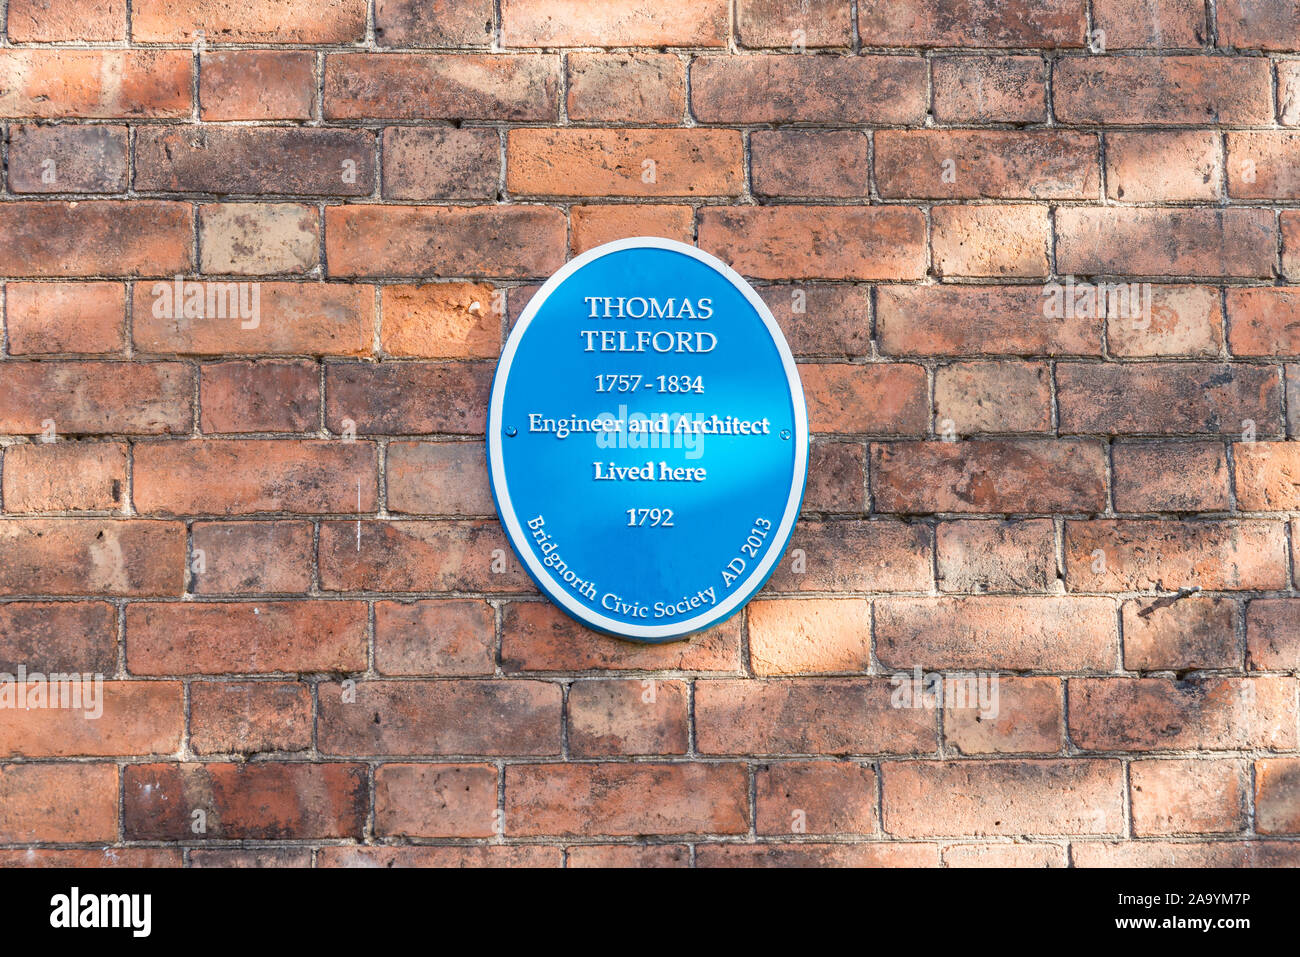 Bridgnorth bürgerlichen Gesellschaft blaue Plakette Kennzeichnung Haus in Bridgnorth, Shropshire, wo Thomas Telford 1792 lebte Stockfoto